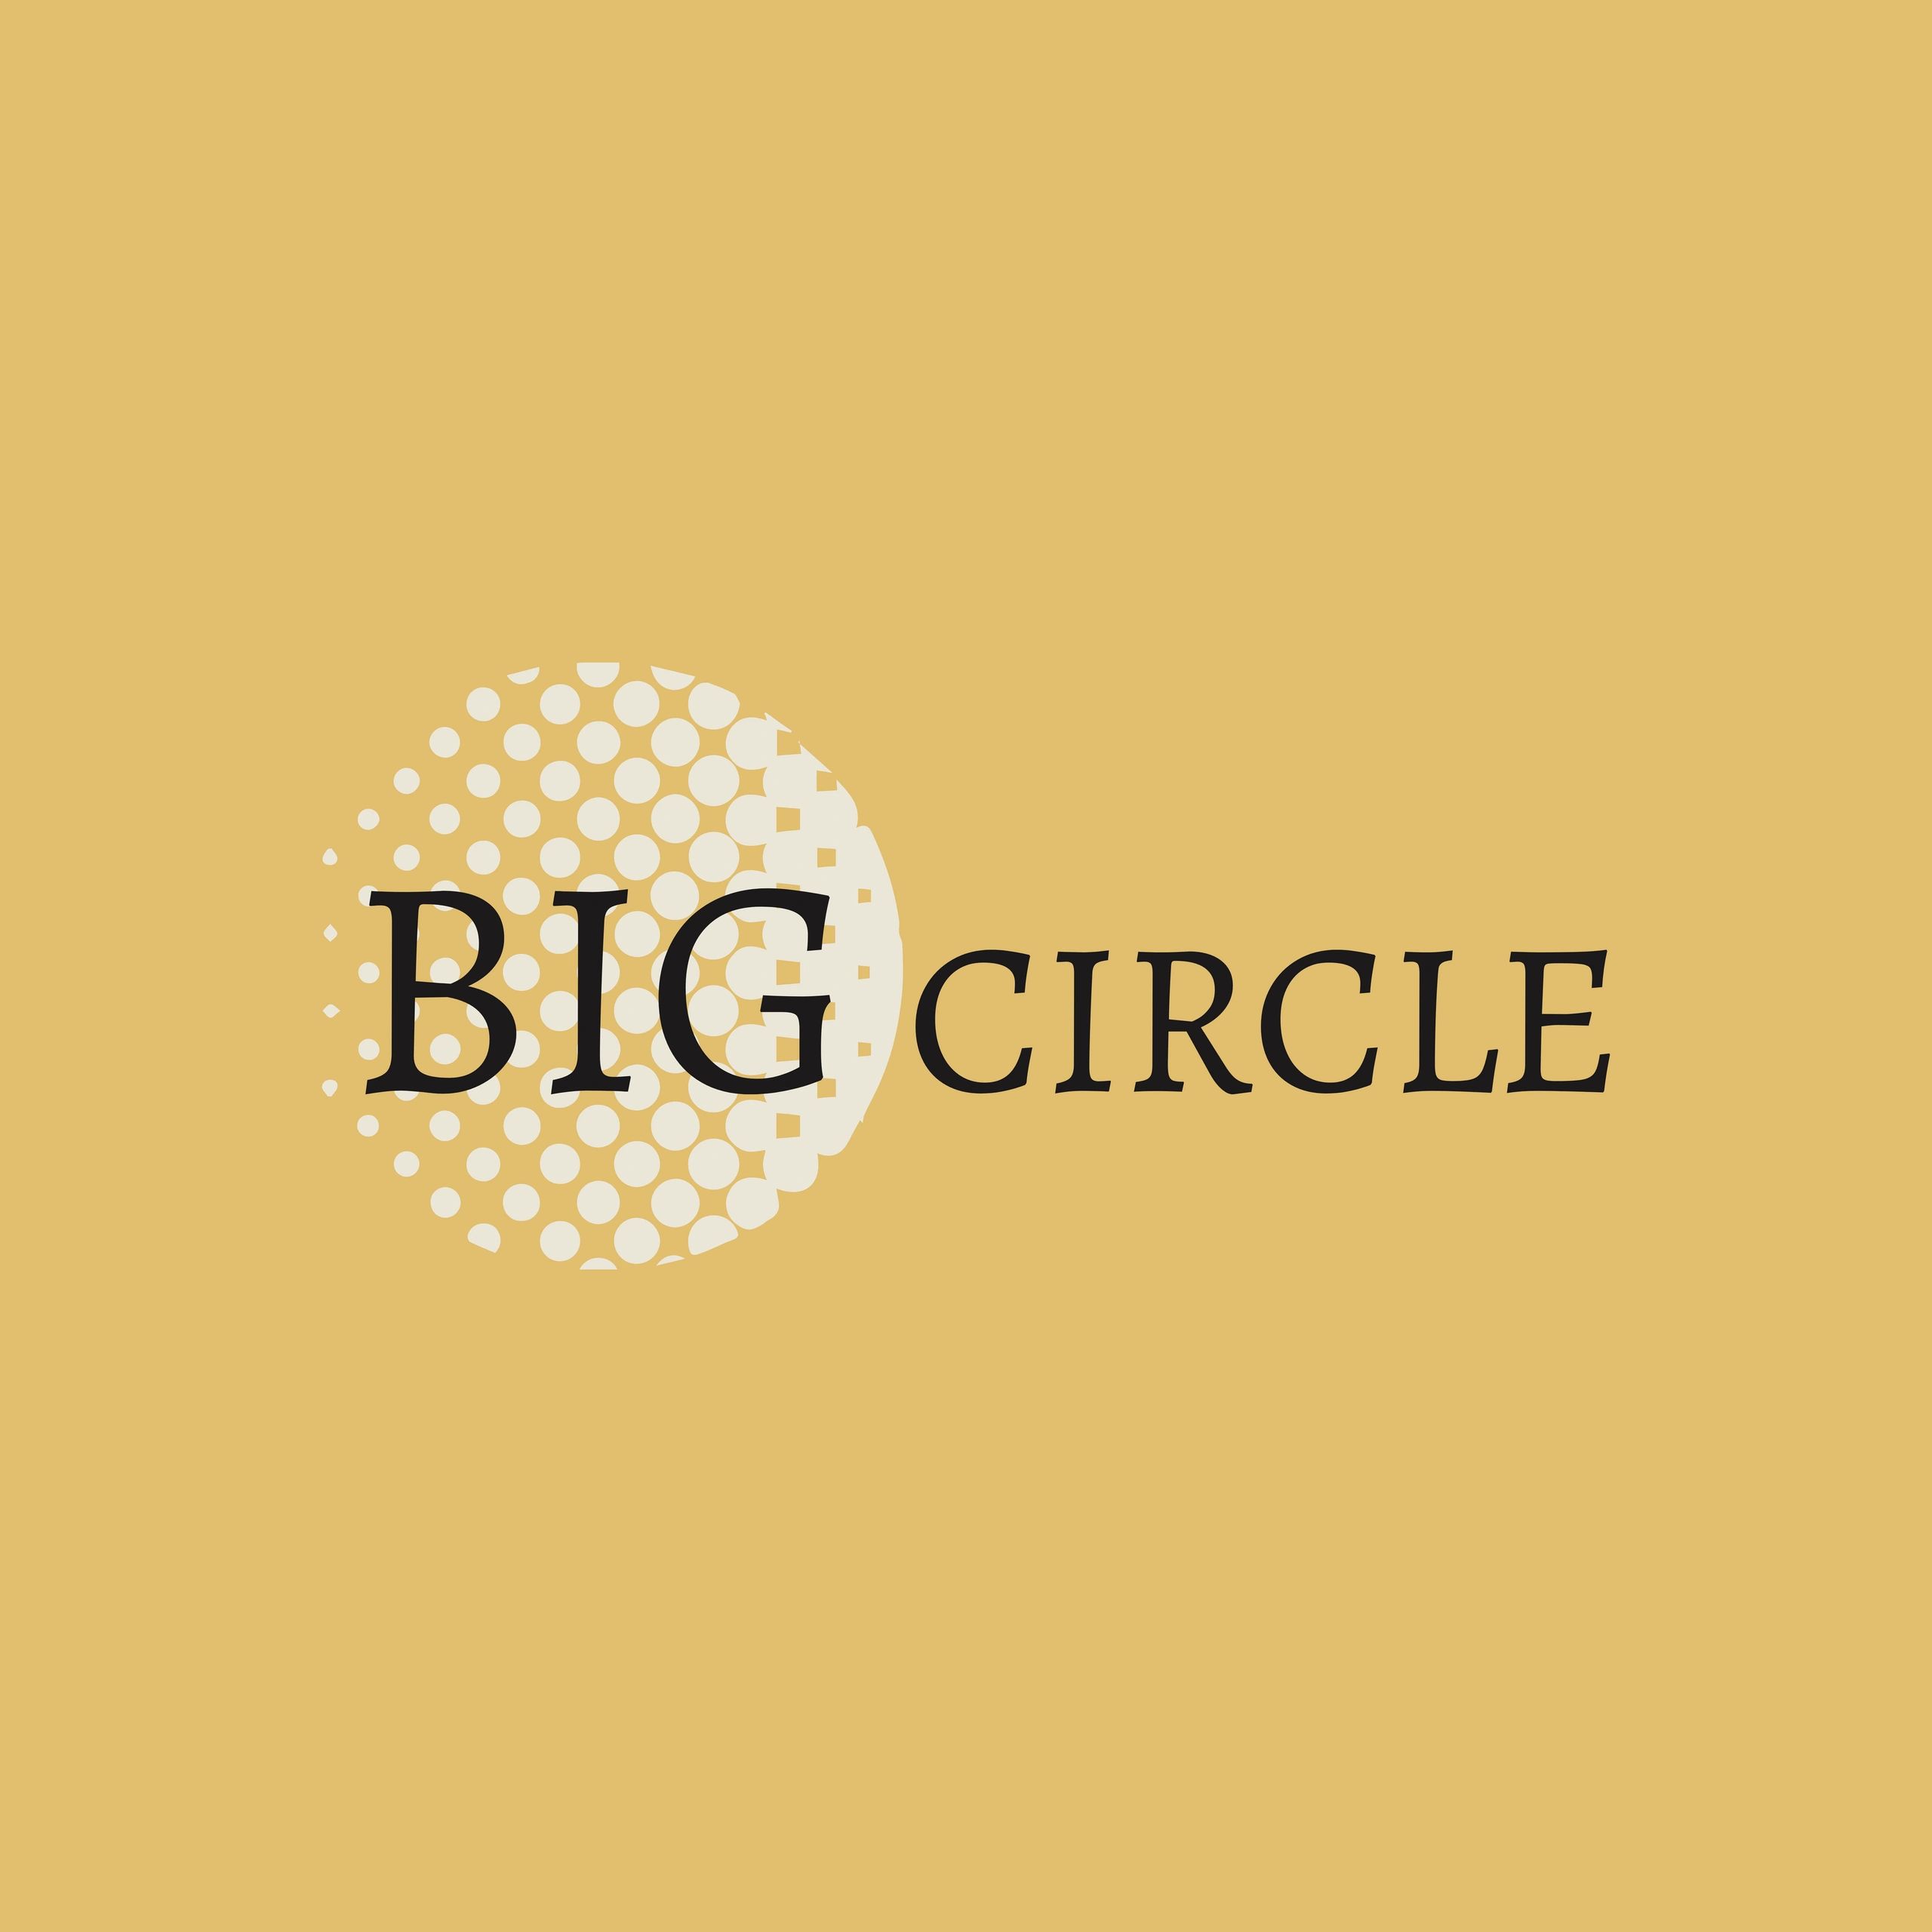 Big Circle Consulting Llp